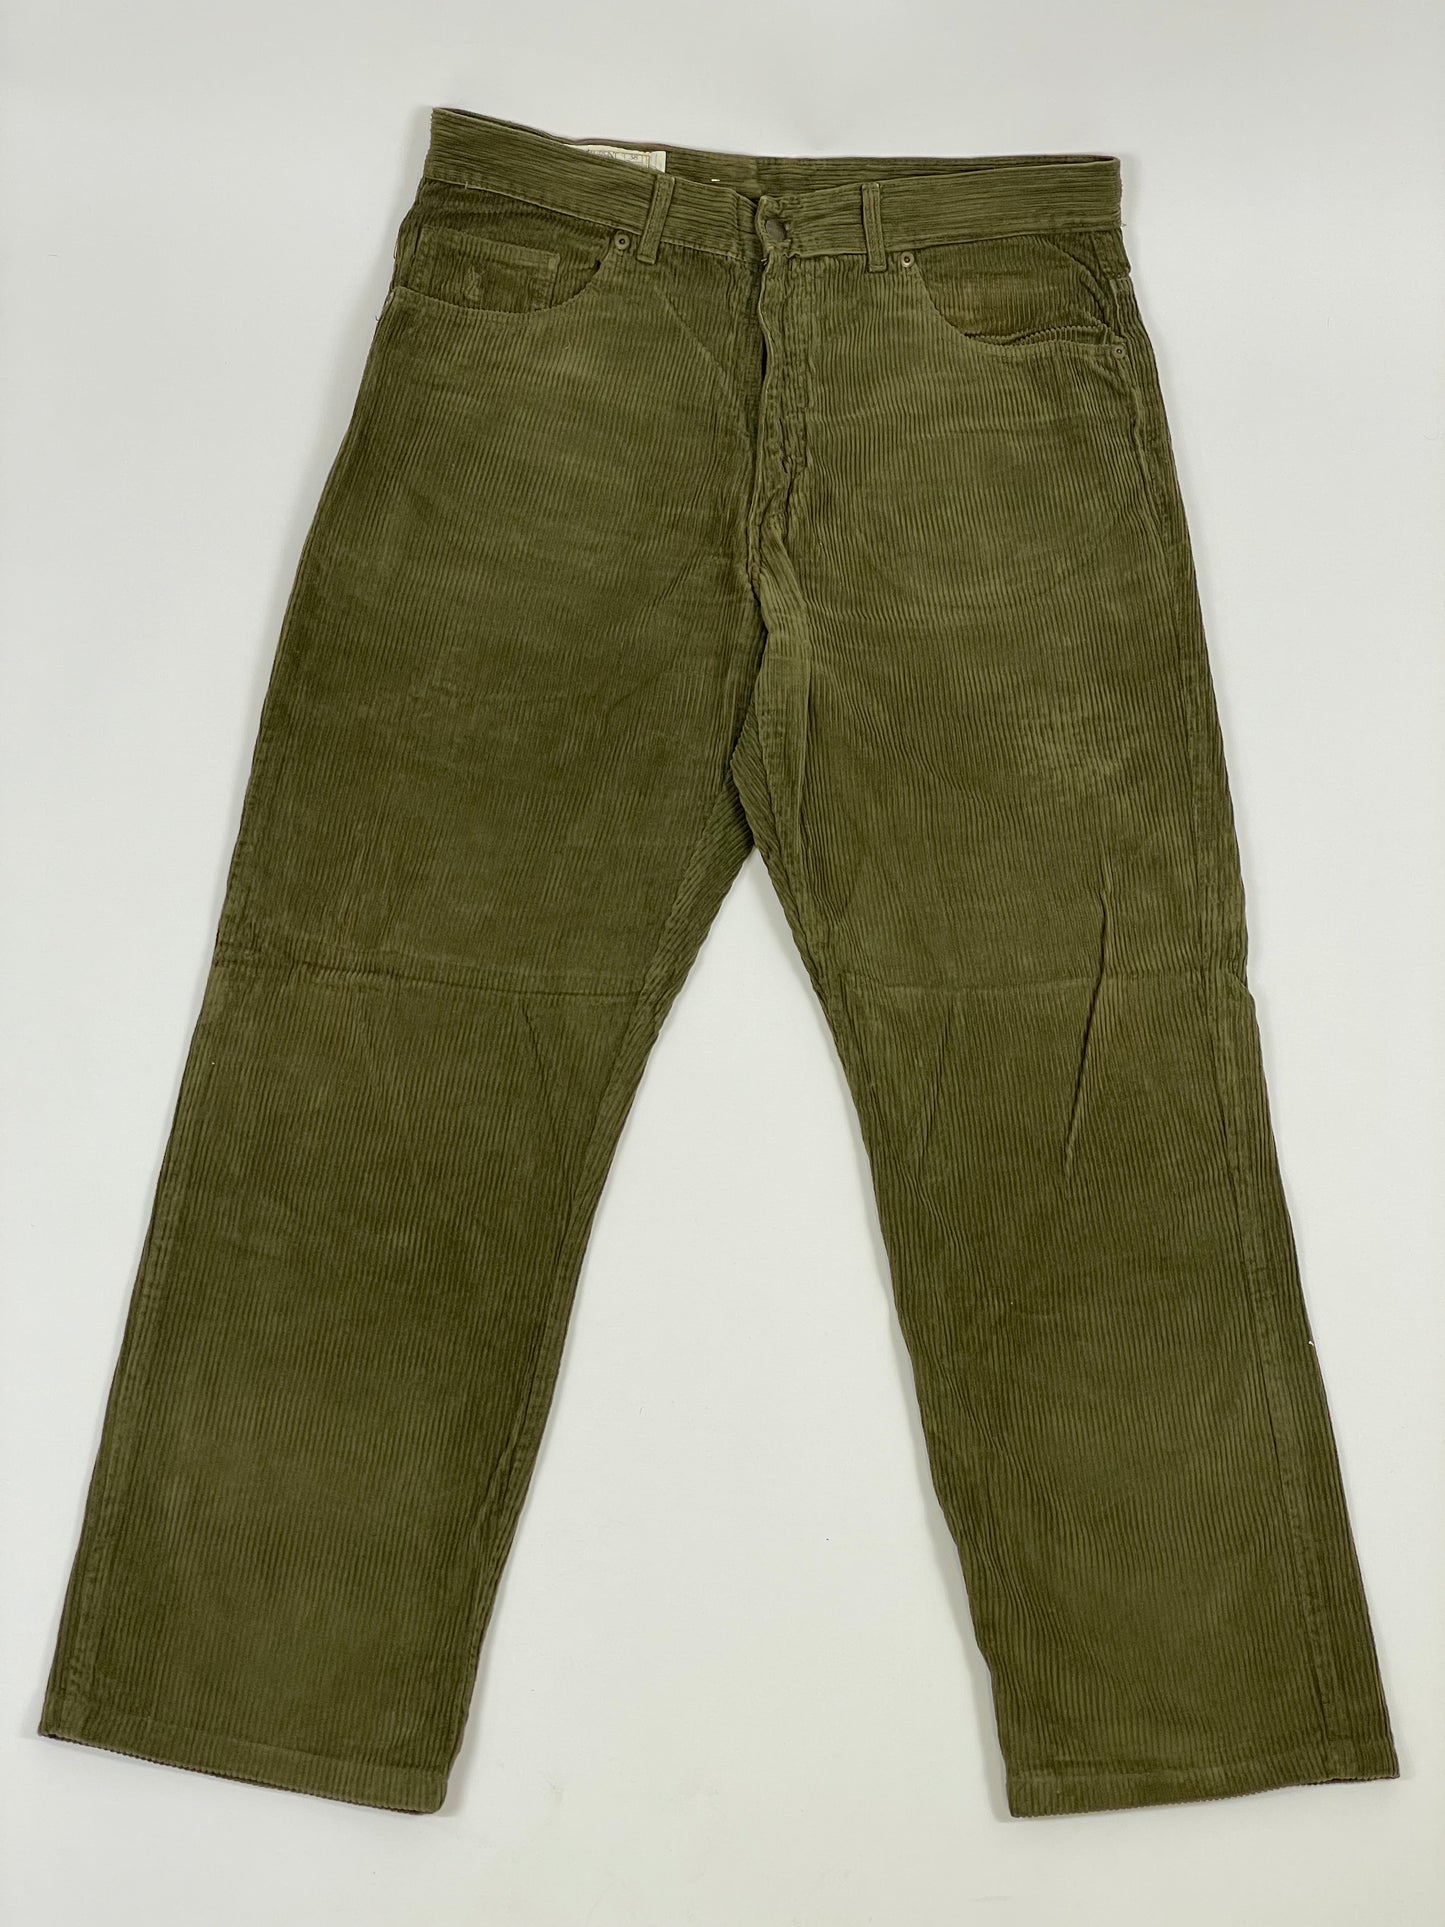 Pantalone Yves Saint Laurent 1970s